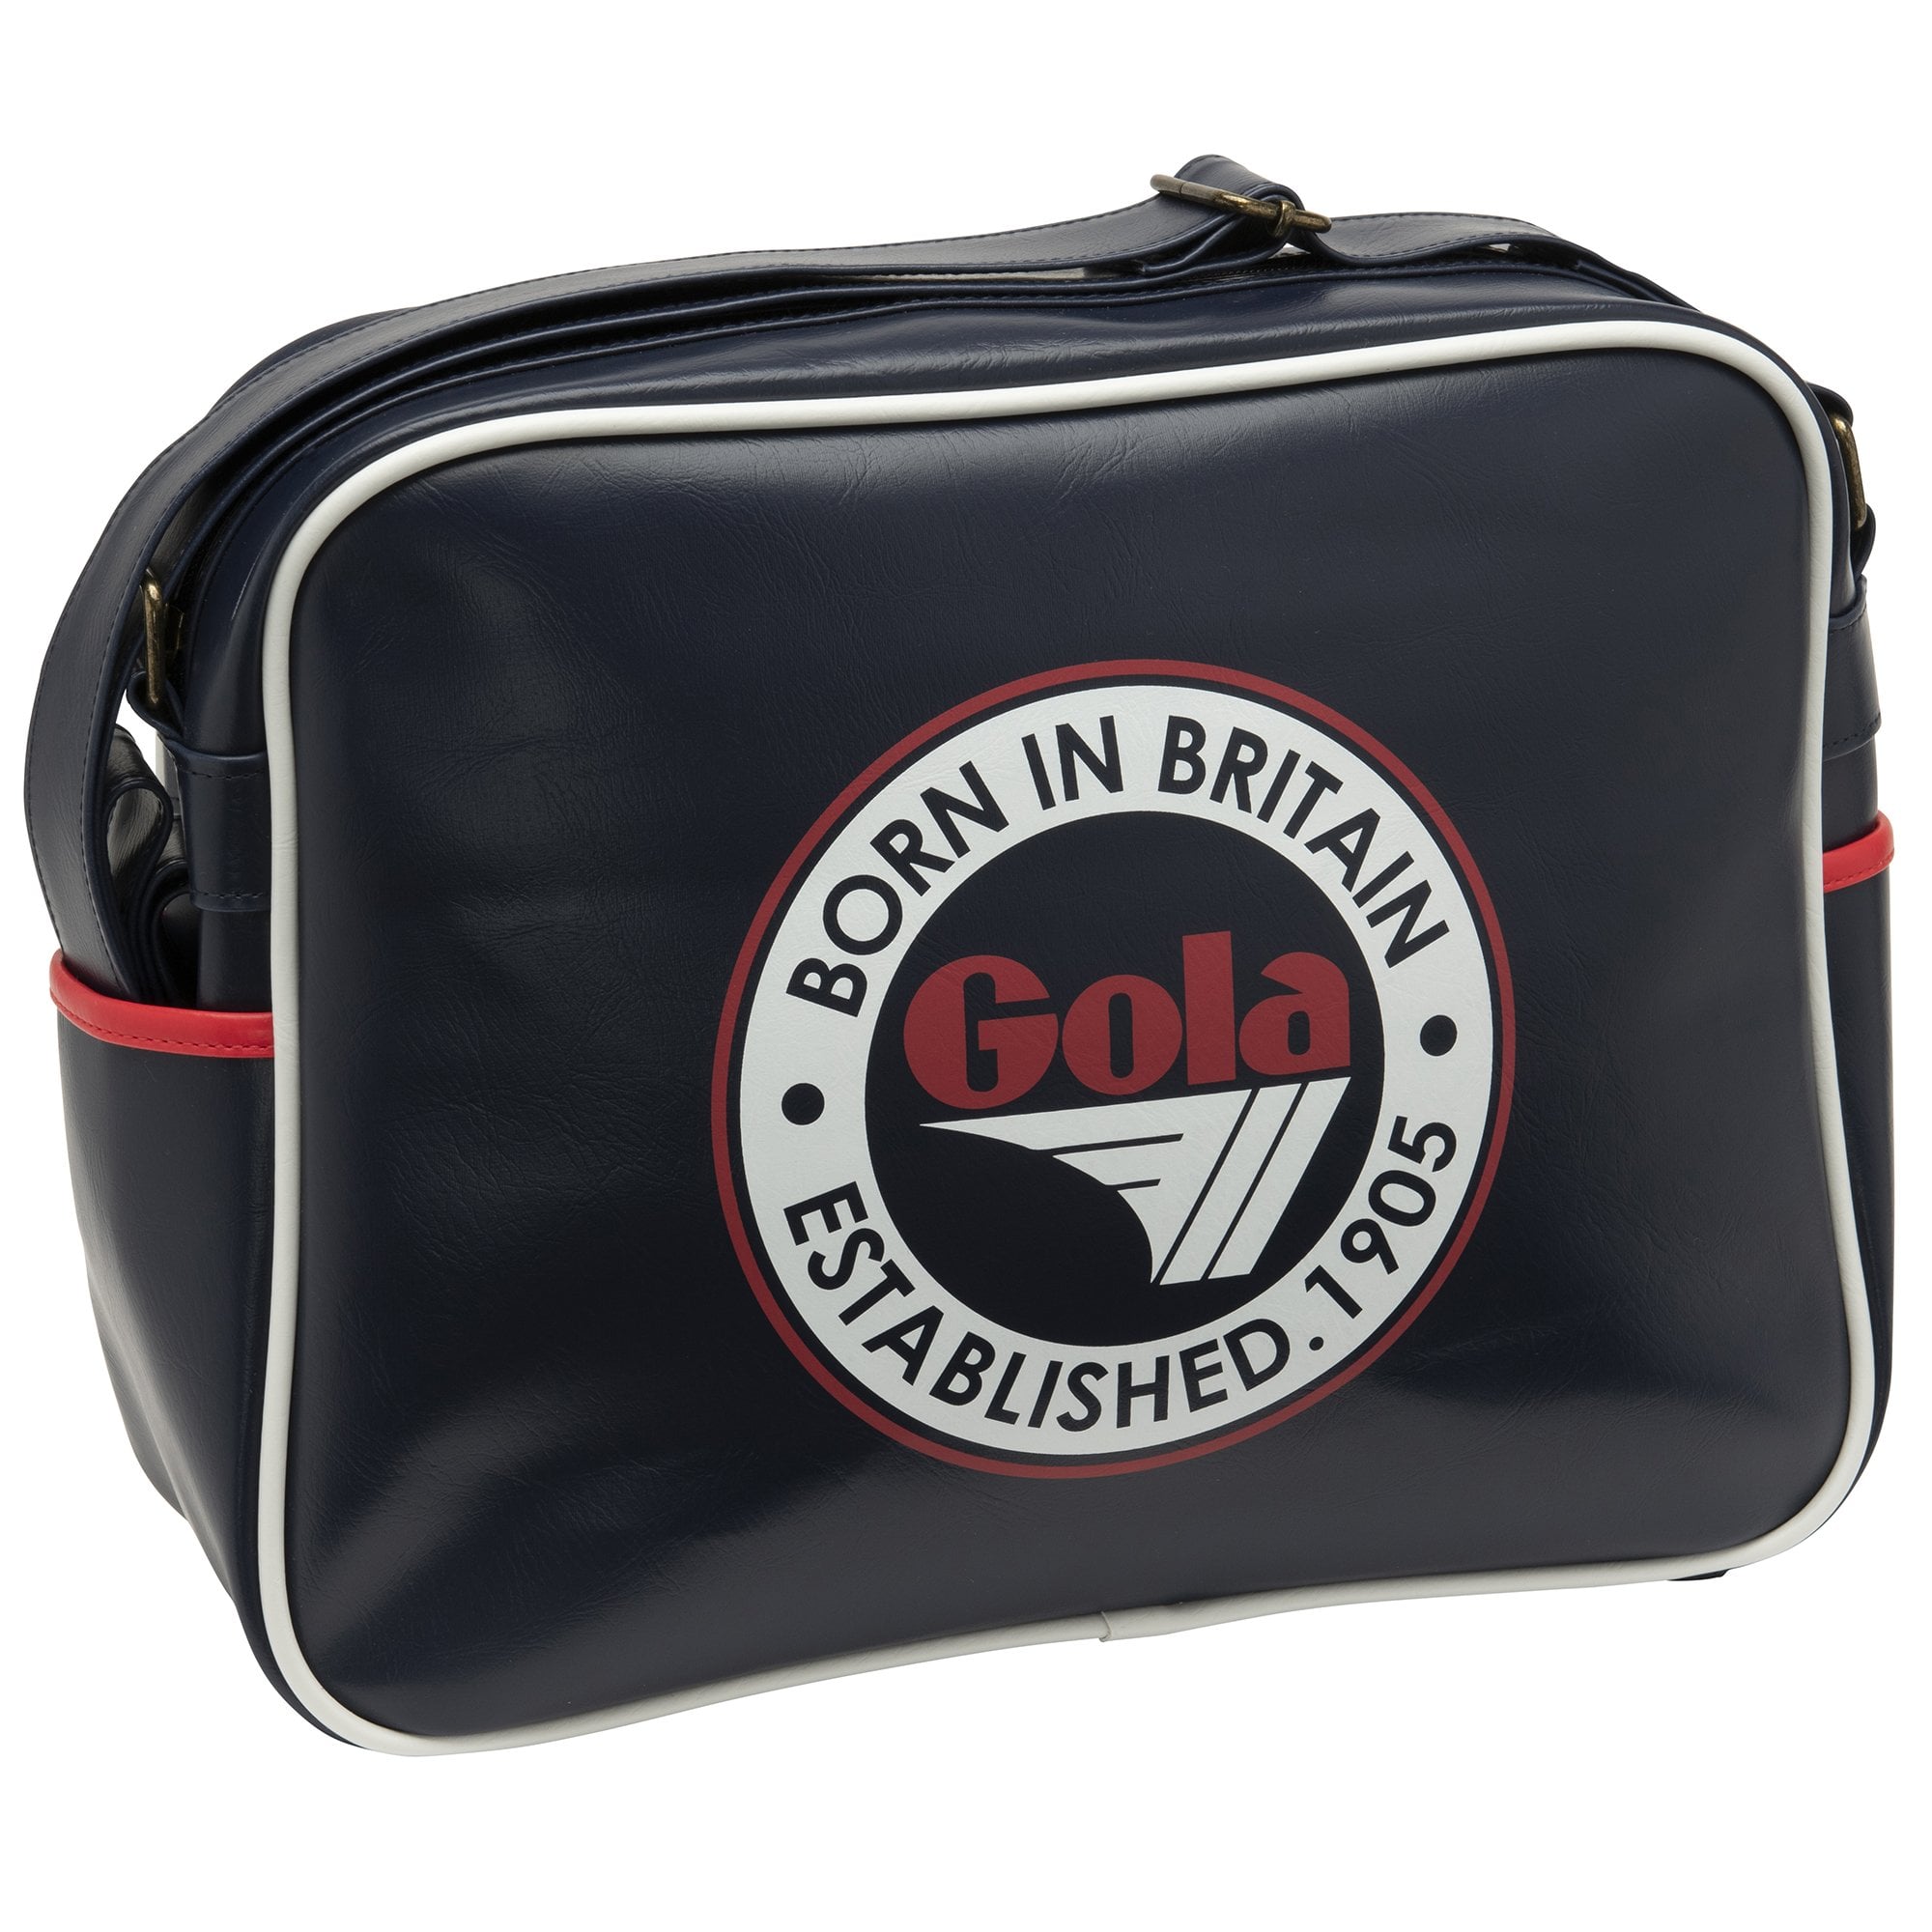 Gola Redford Classic Bag